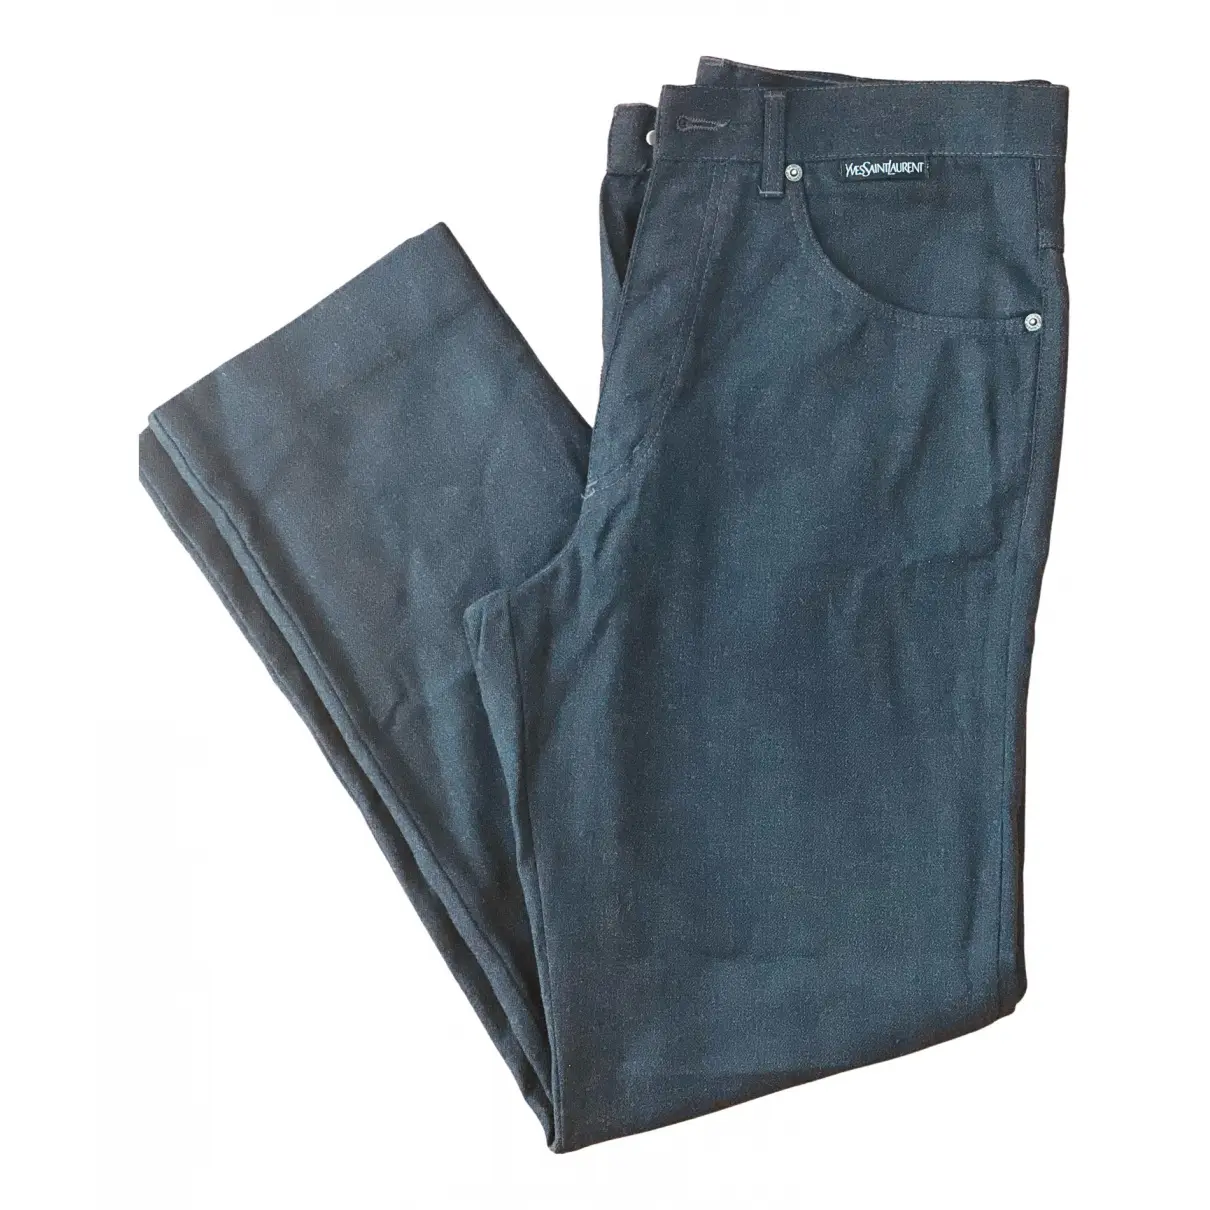 Buy Yves Saint Laurent Straight jeans online